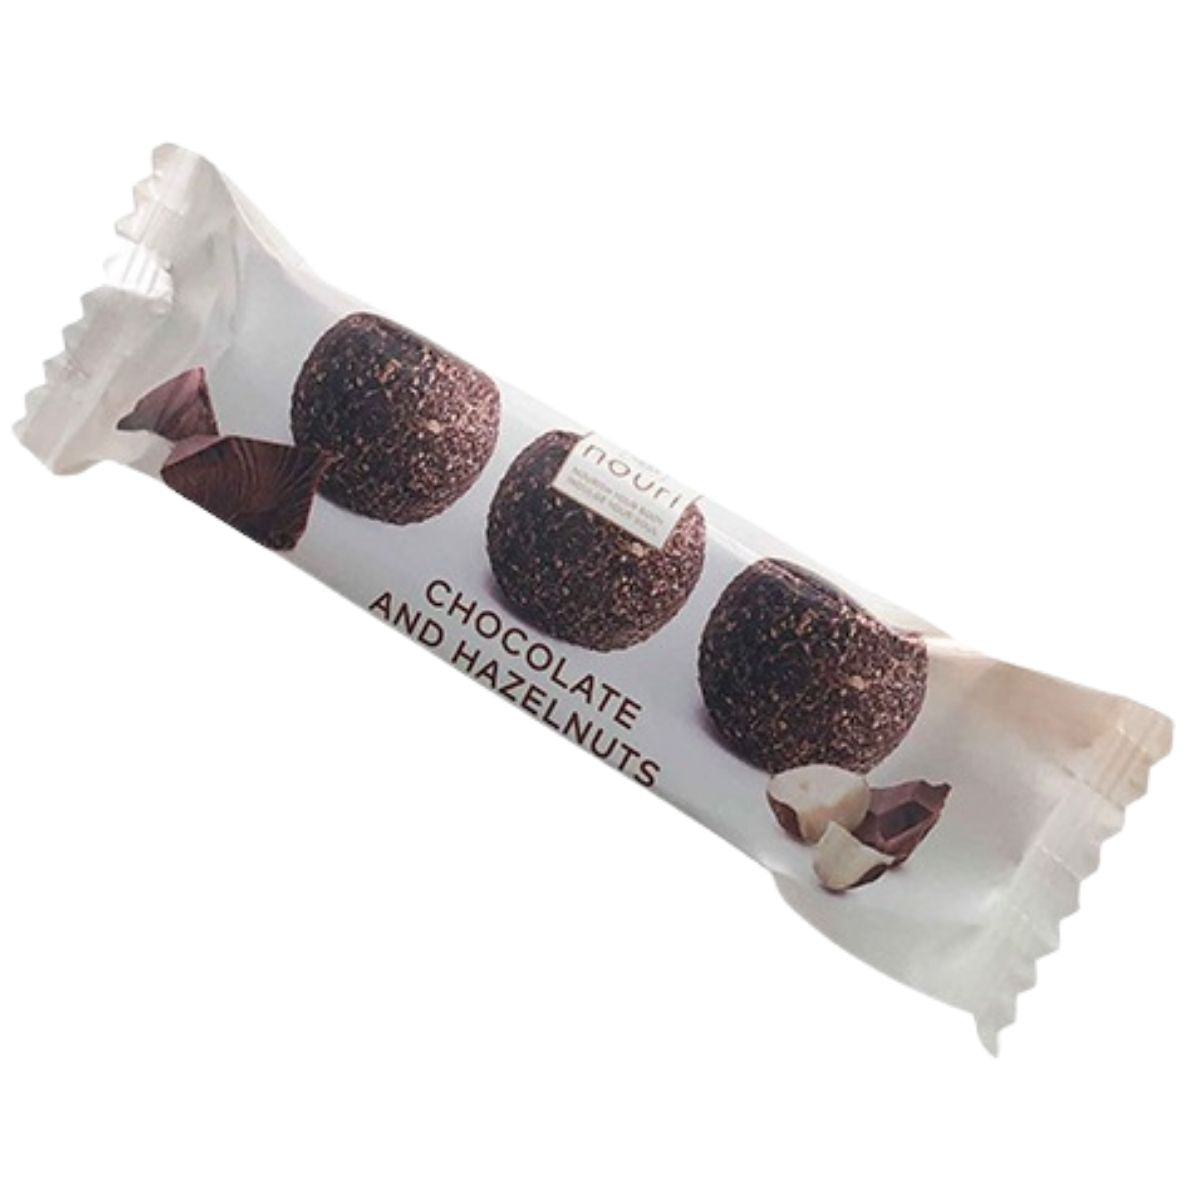 Nouri Truffles Chocolate & Hazelnut - 30g